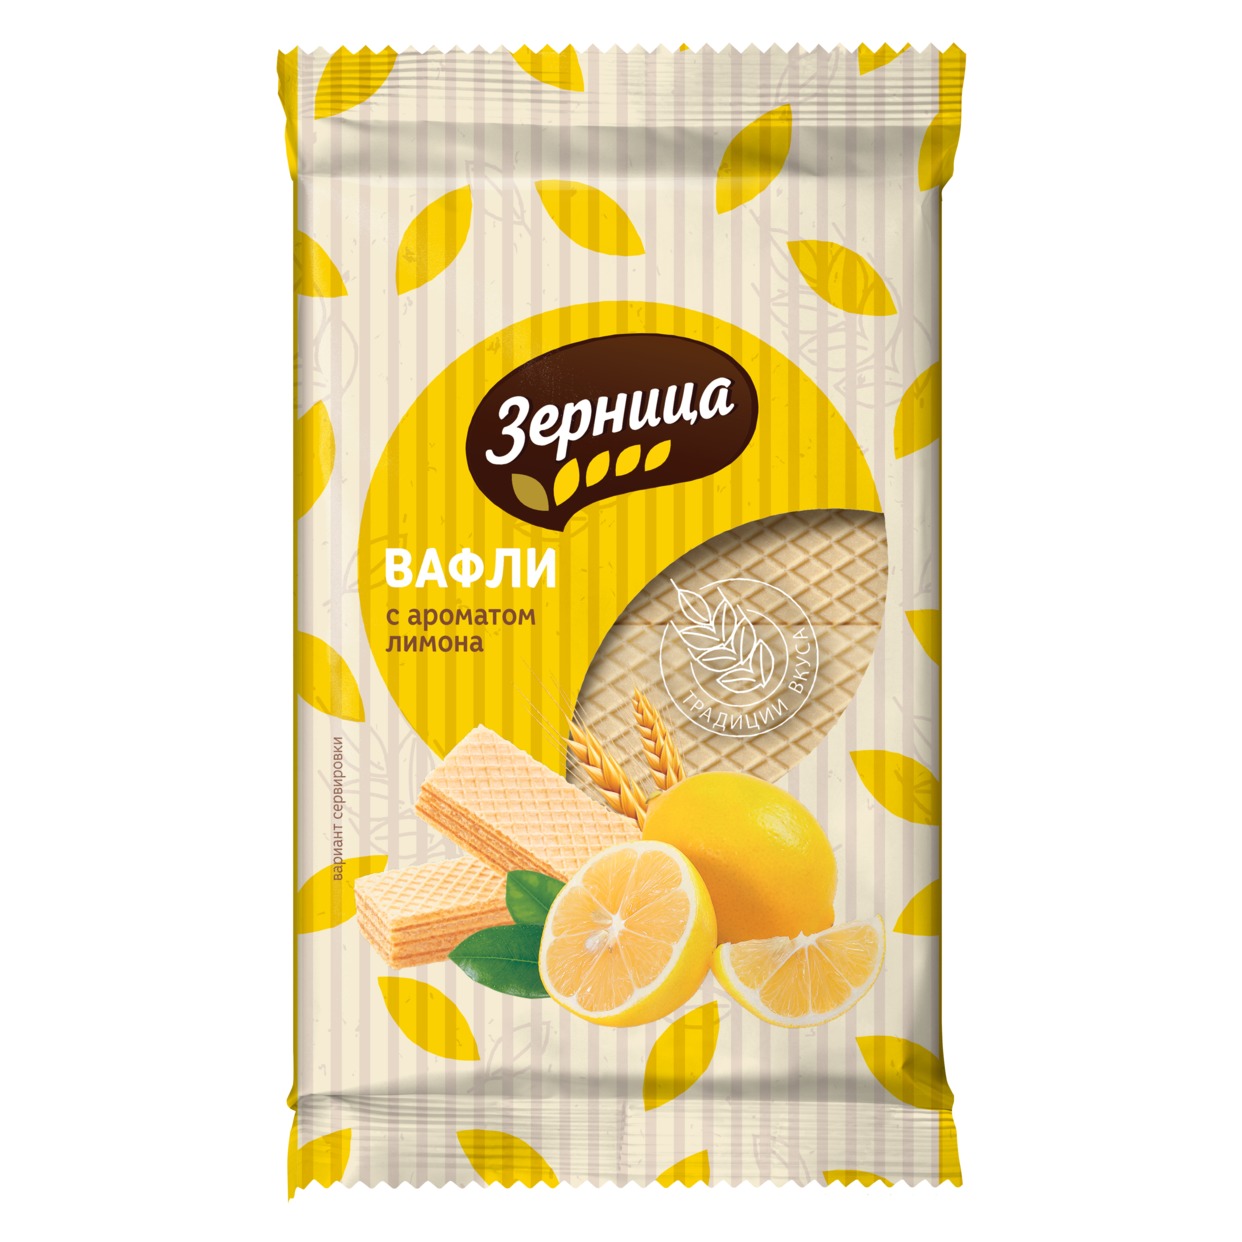 Вафли с жировой начинкой со вкусом лимона,Зерница, 200г